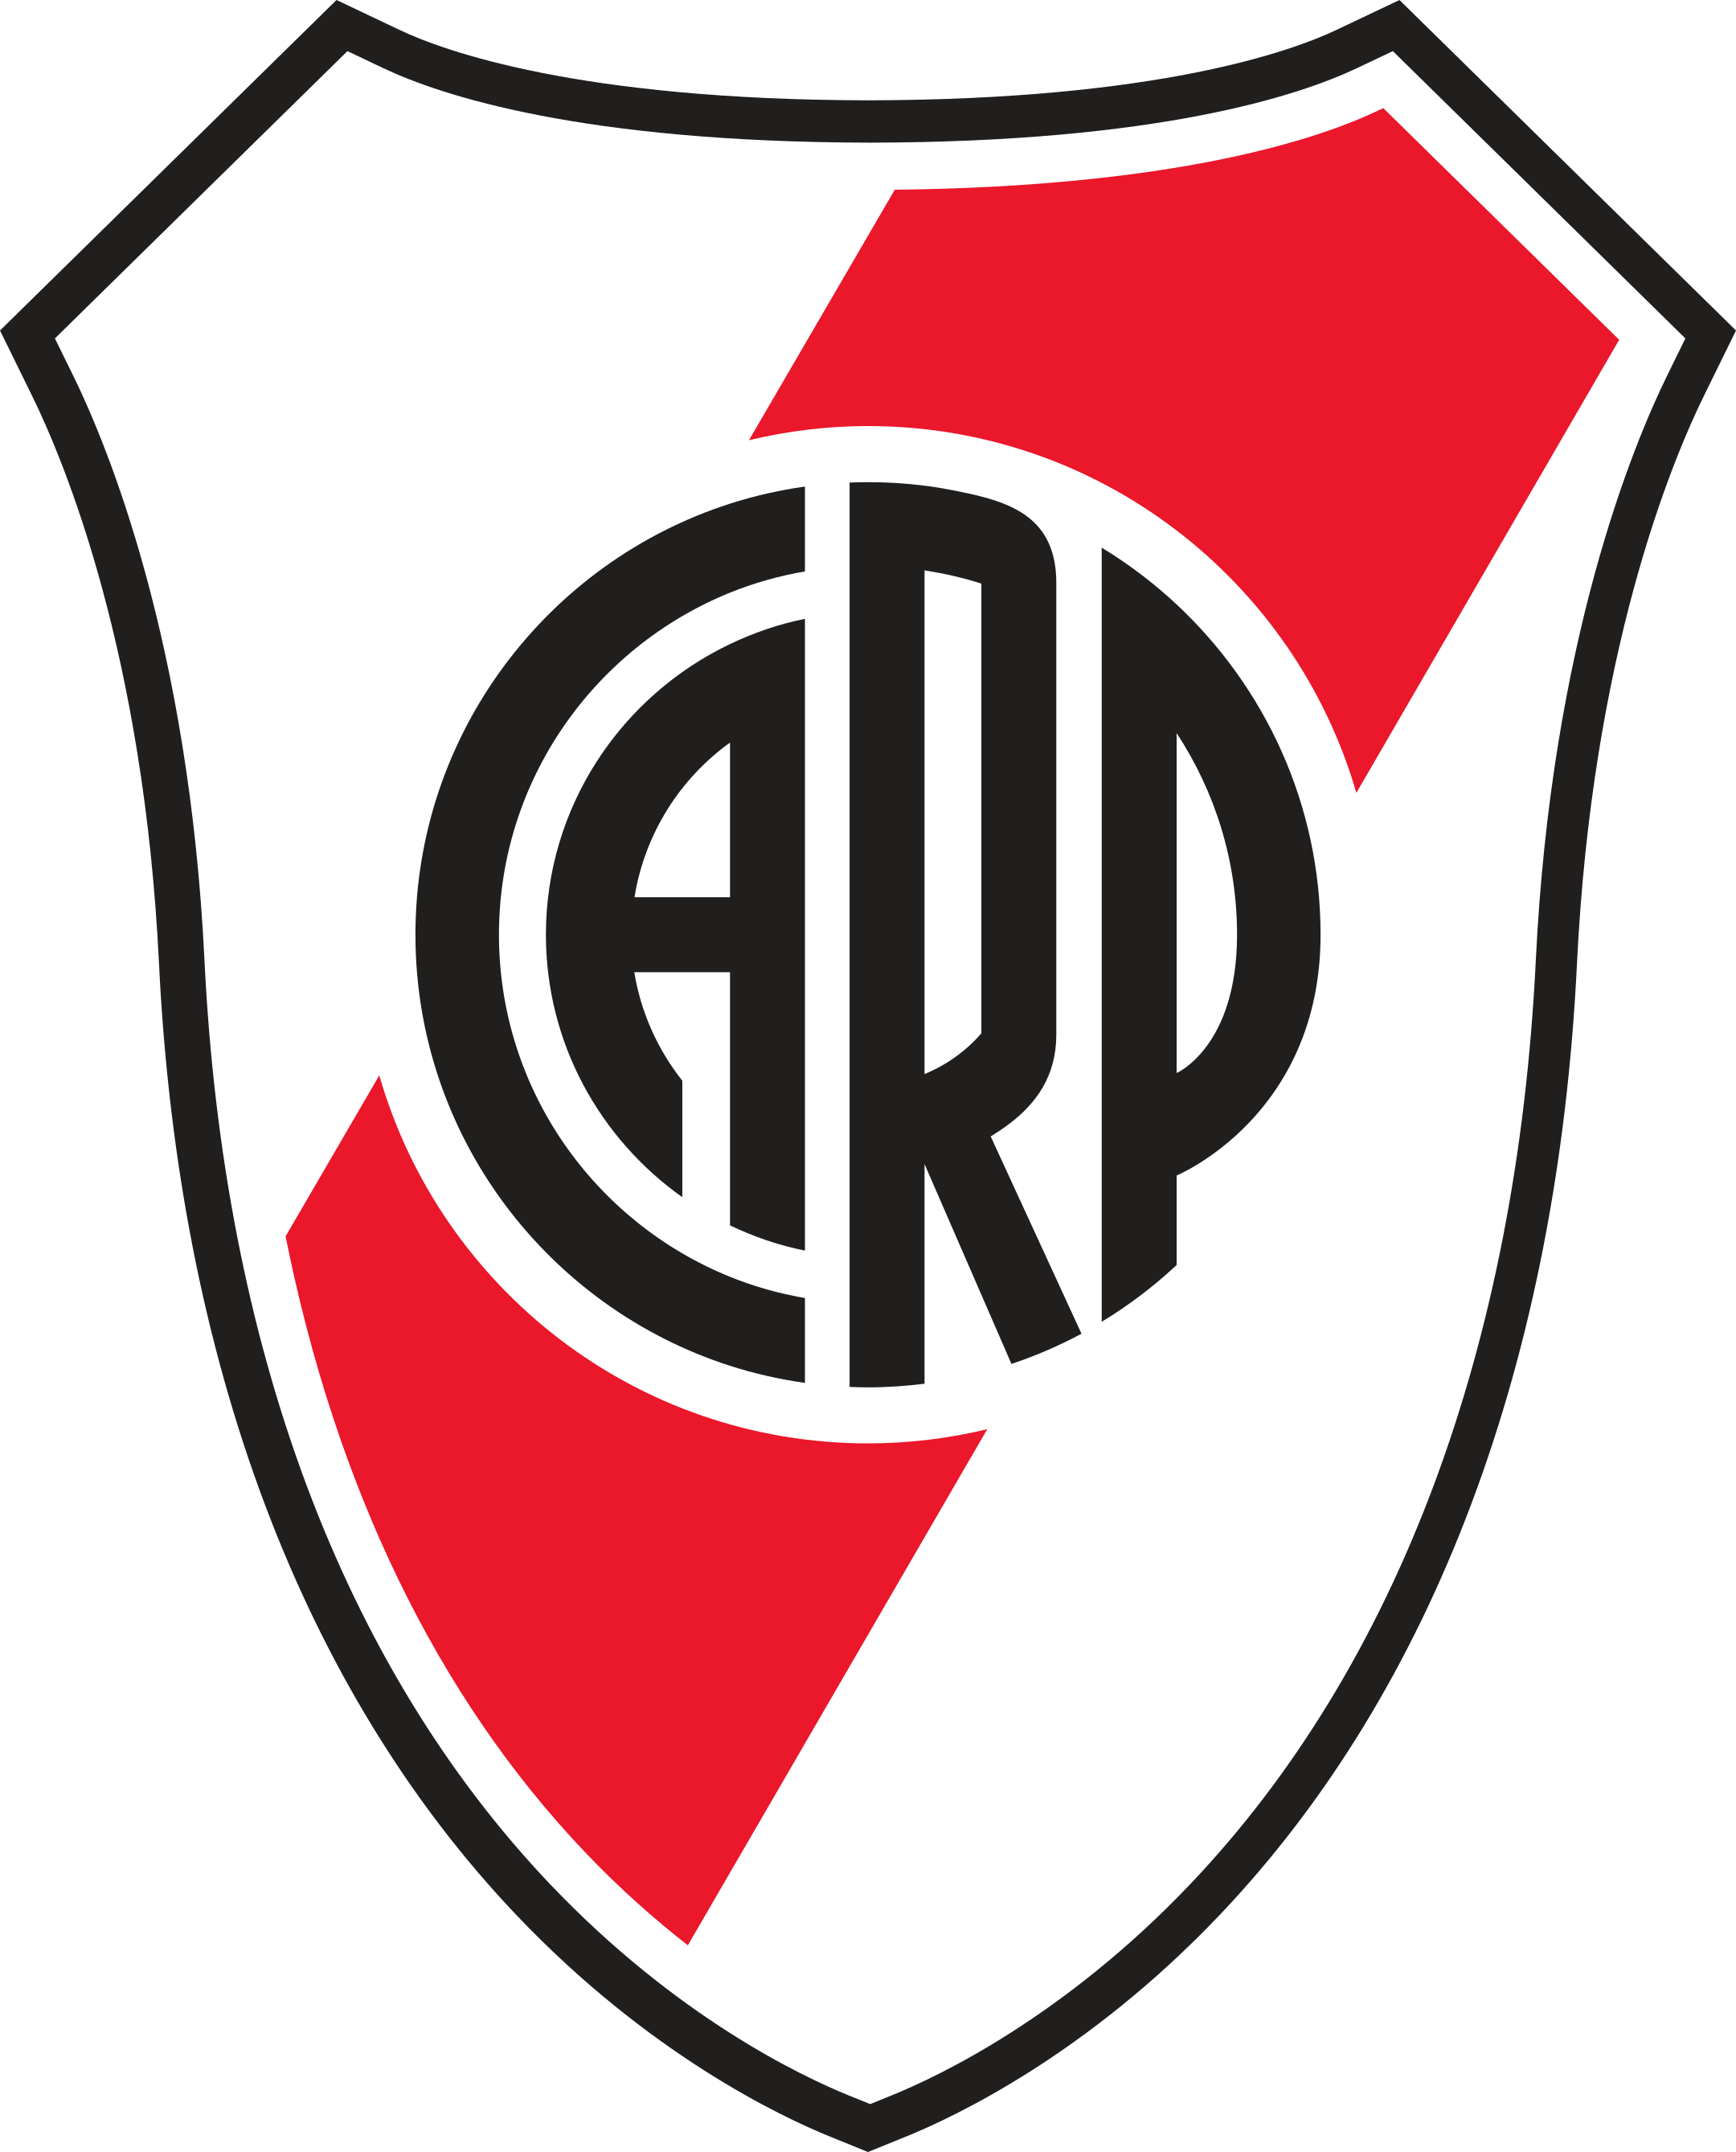 river plate logo 1 1 - River Plate Logo - Club Atlético River Plate Escudo